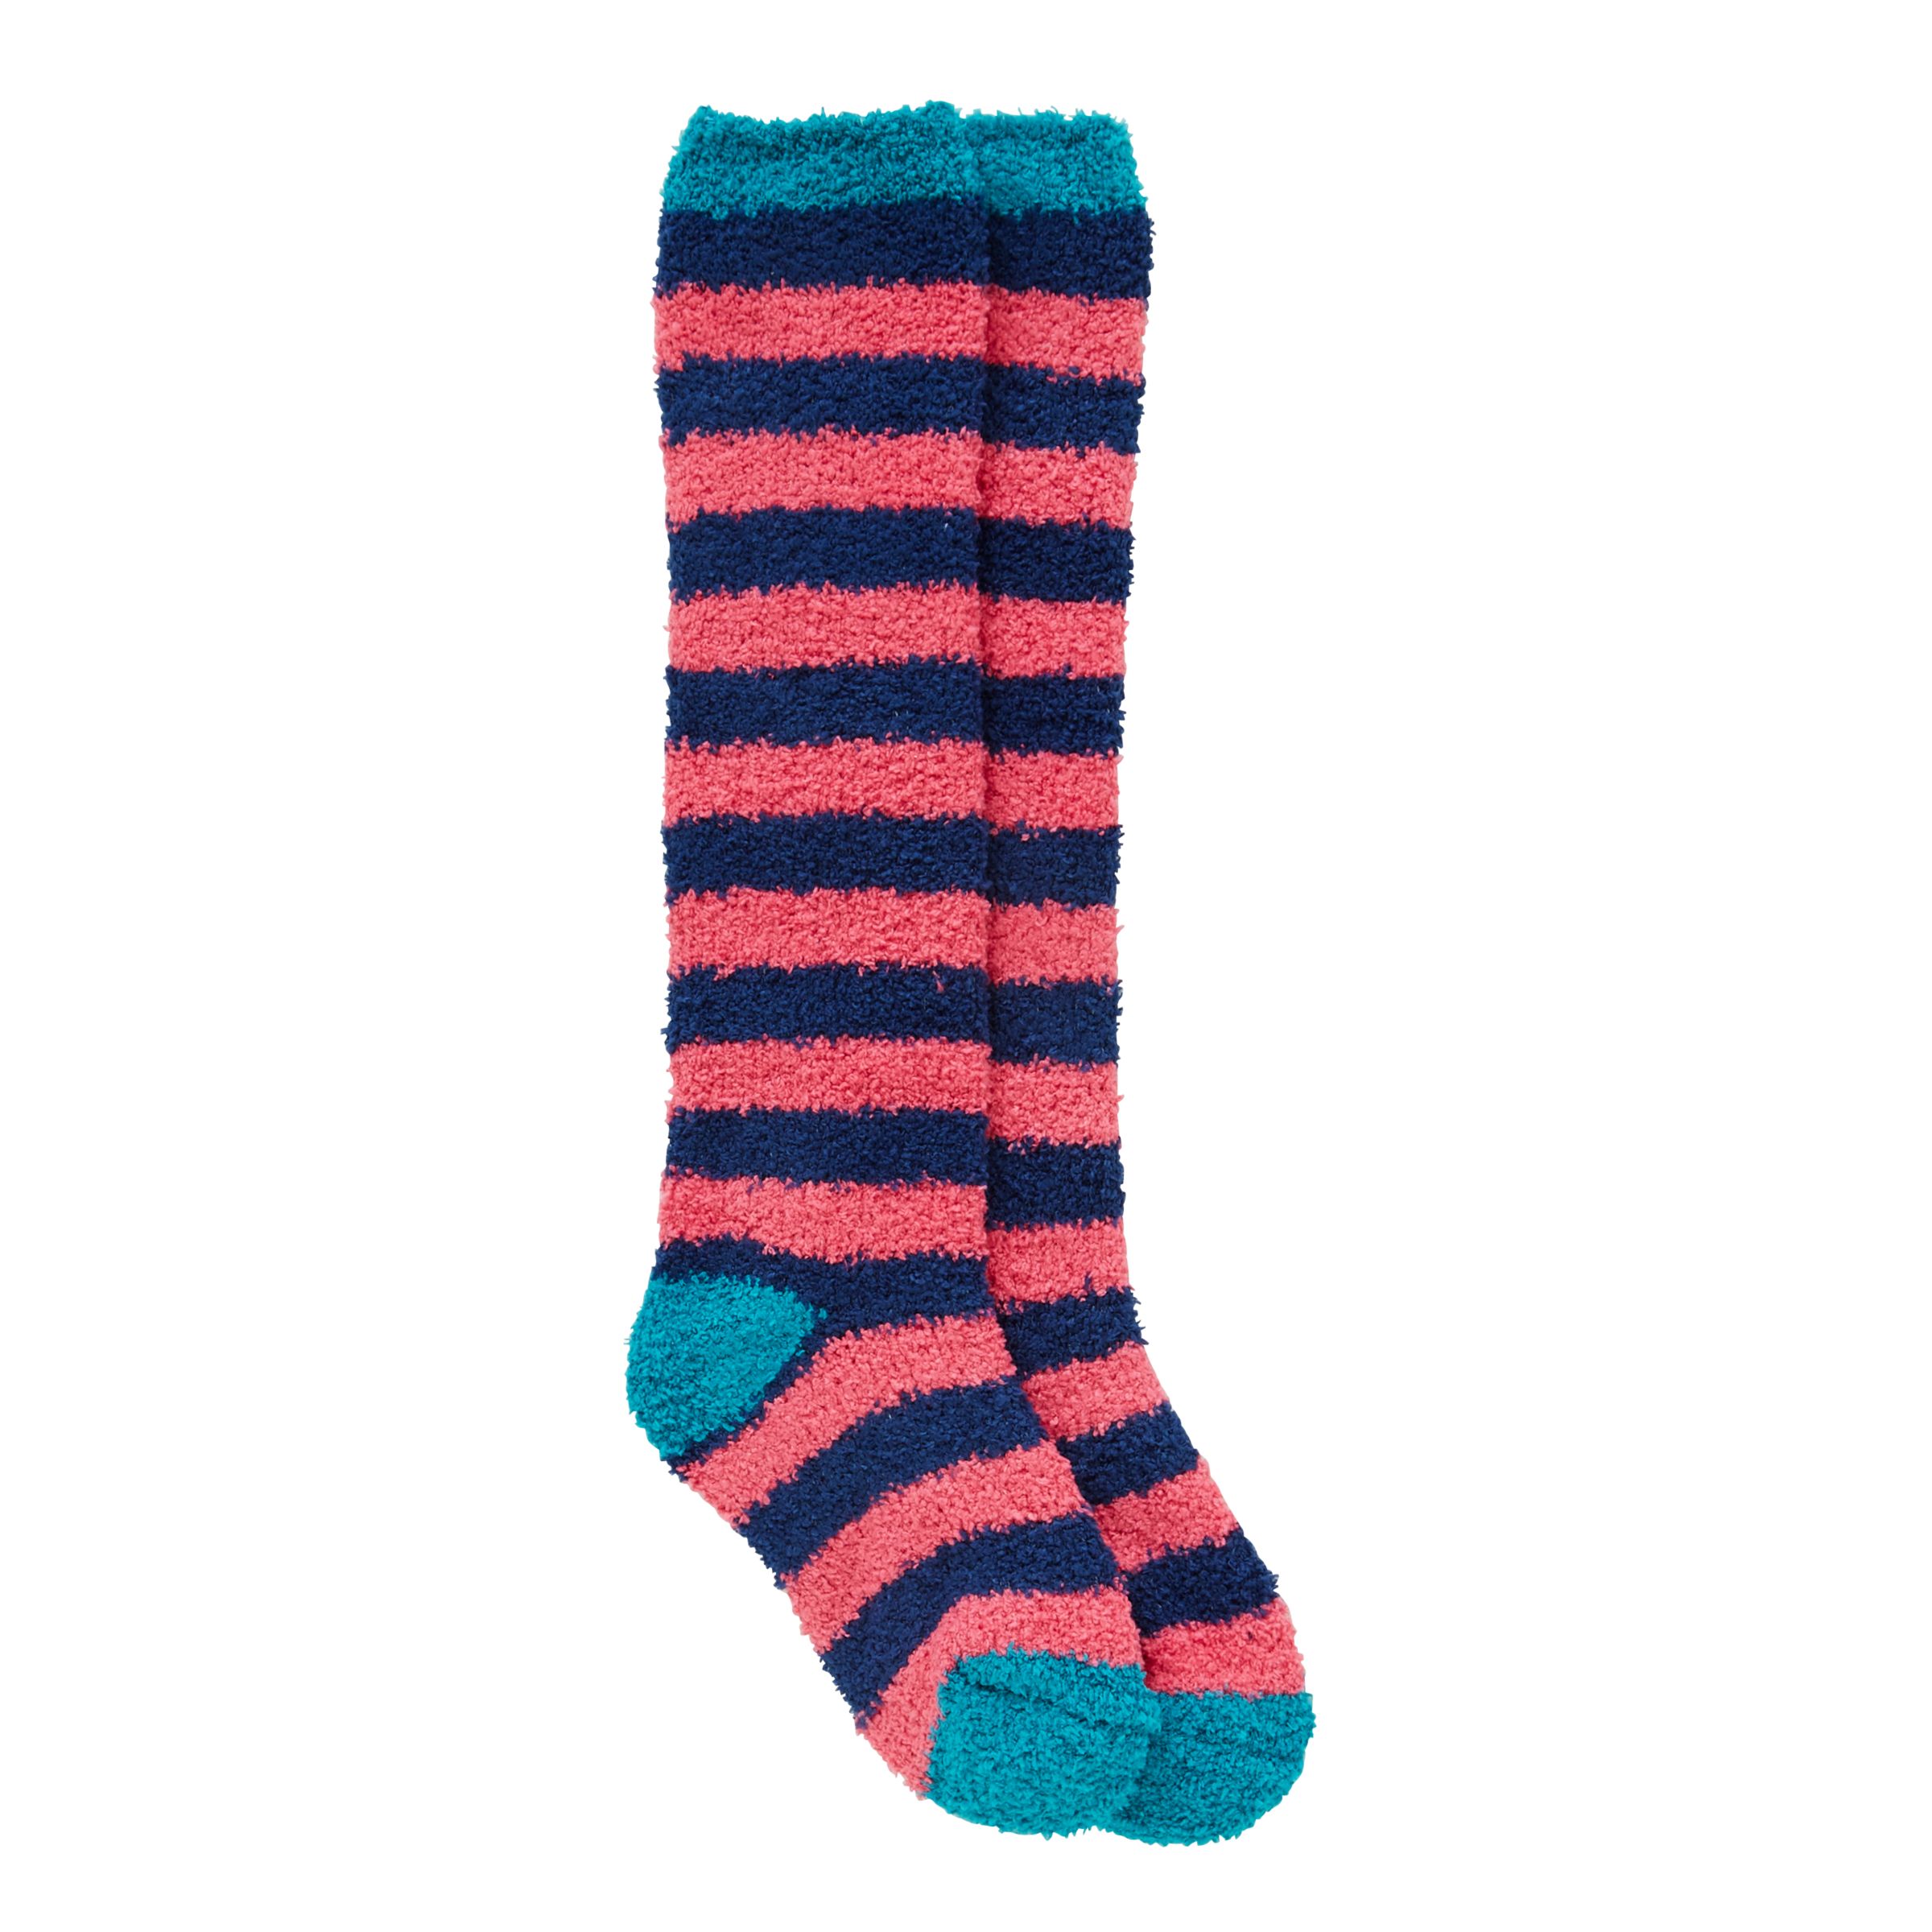 John Lewis Children's Striped Fluffy Welly Socks